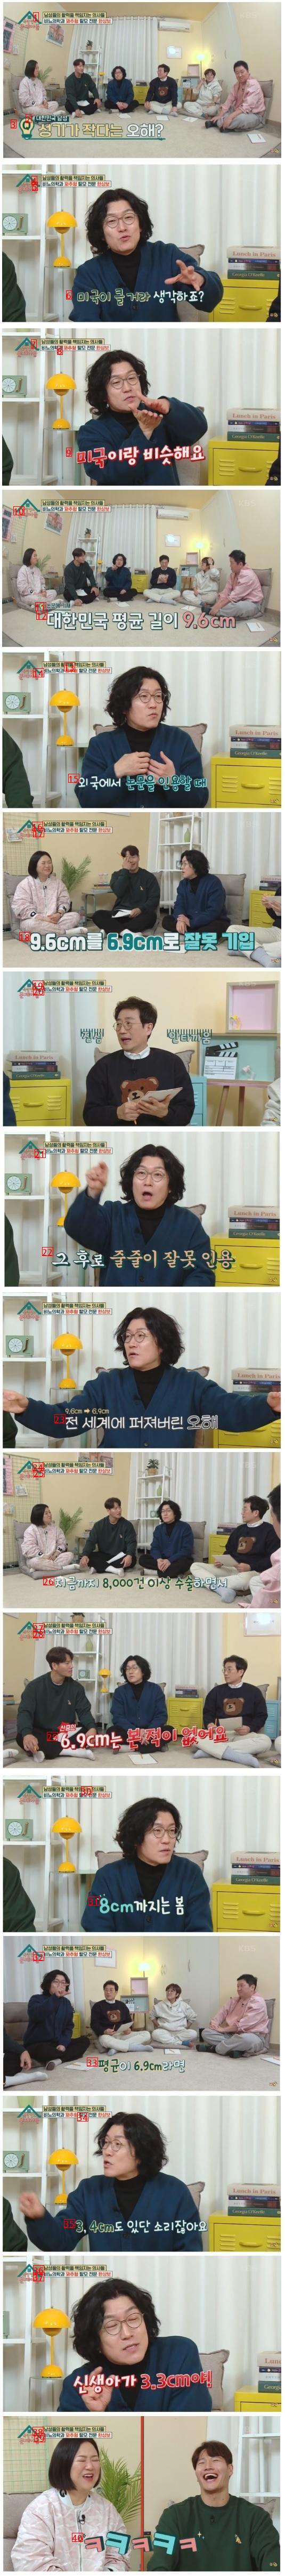 ???: 한국 남자 평균 6.9cm는 오해다